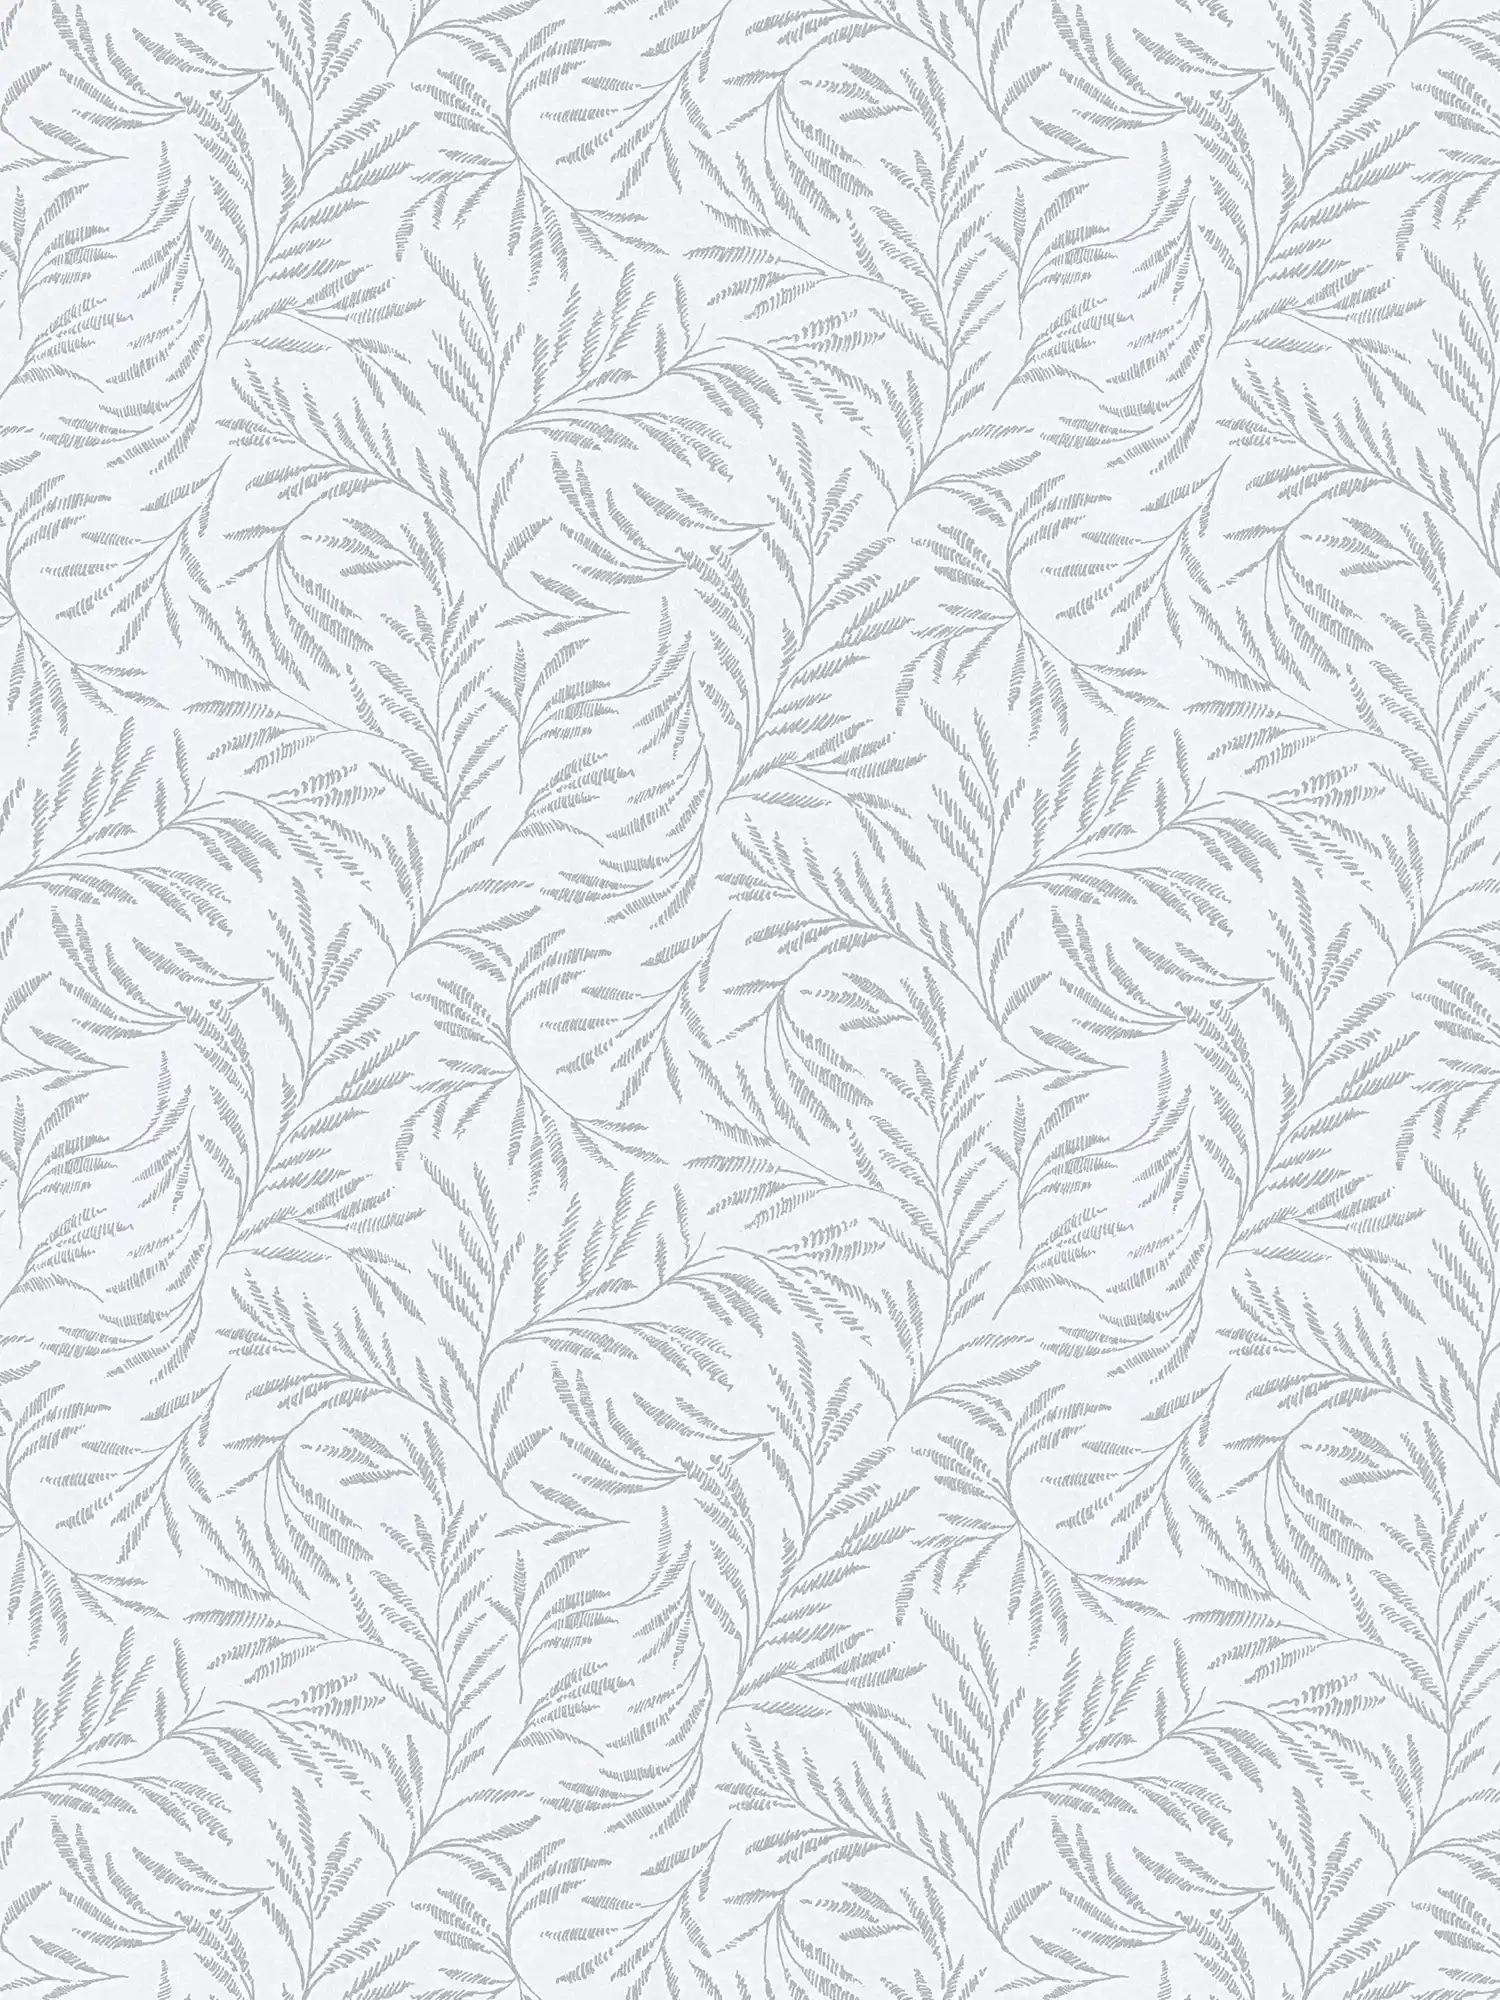 Vliesbehang metallic patroon met bladranken - grijs, zilver
